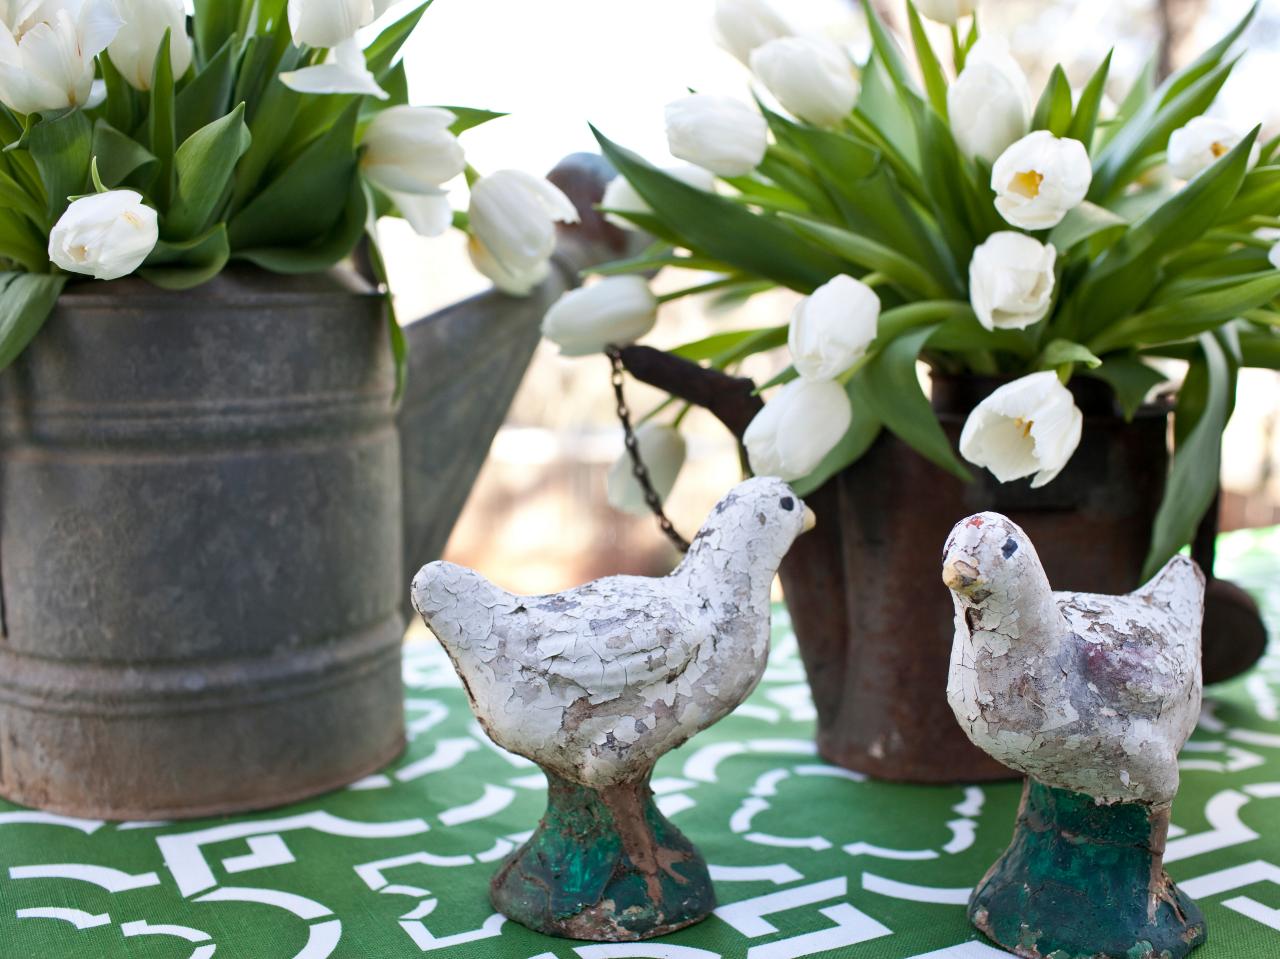 décoration printemps déco originale stylé moderne bidon arrosage plantes tulipe blanche